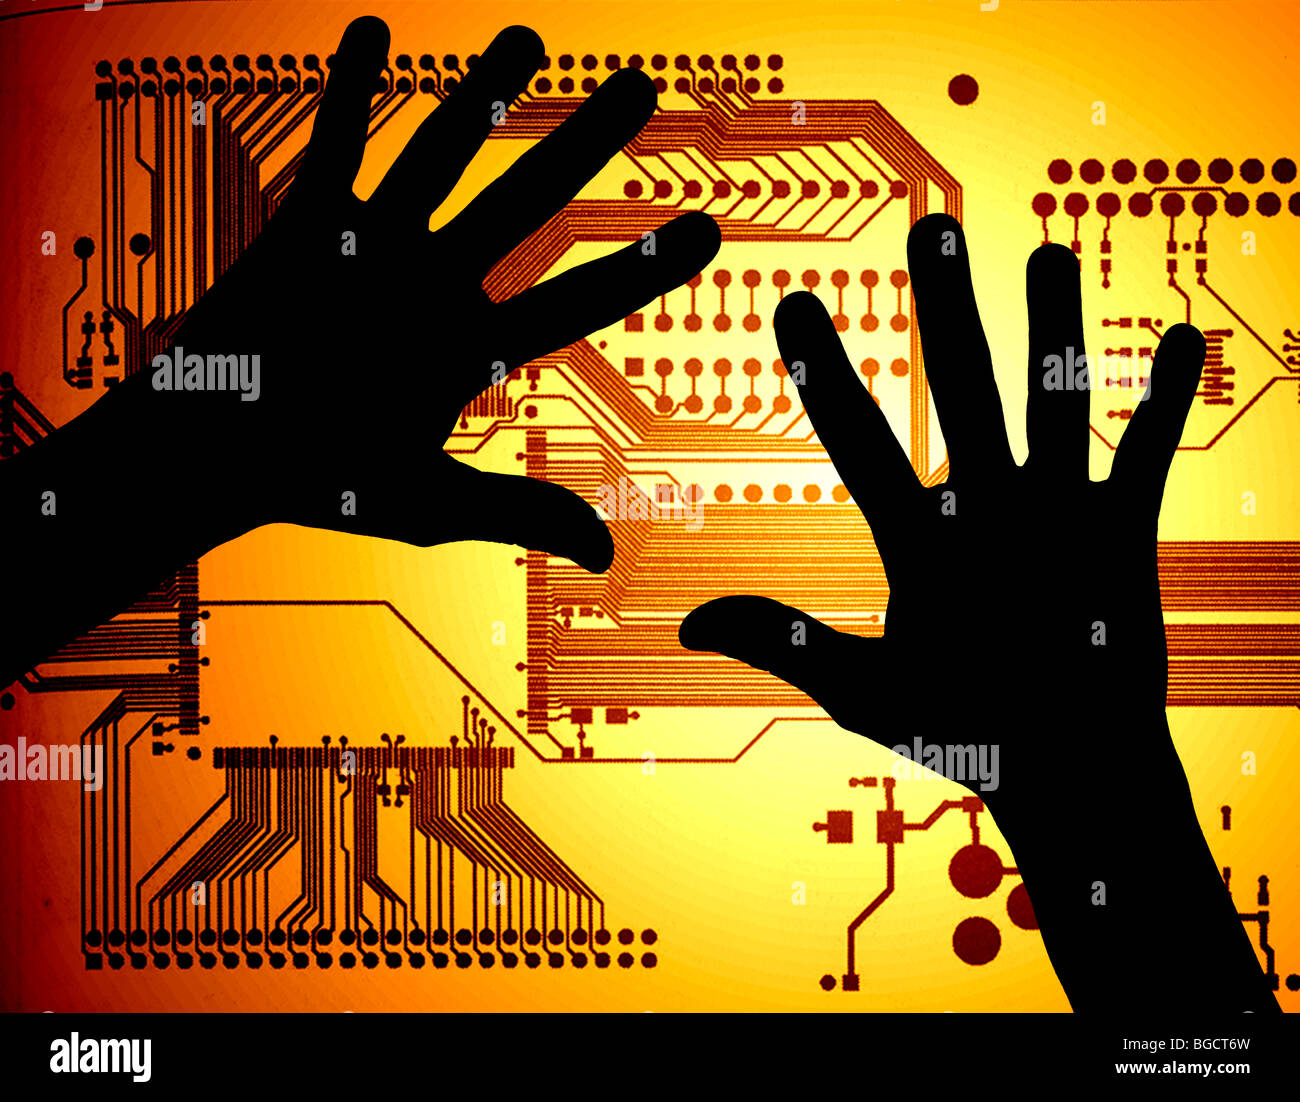 Hände über High-Tech-Platine Abbildung silhouettiert Stockfoto